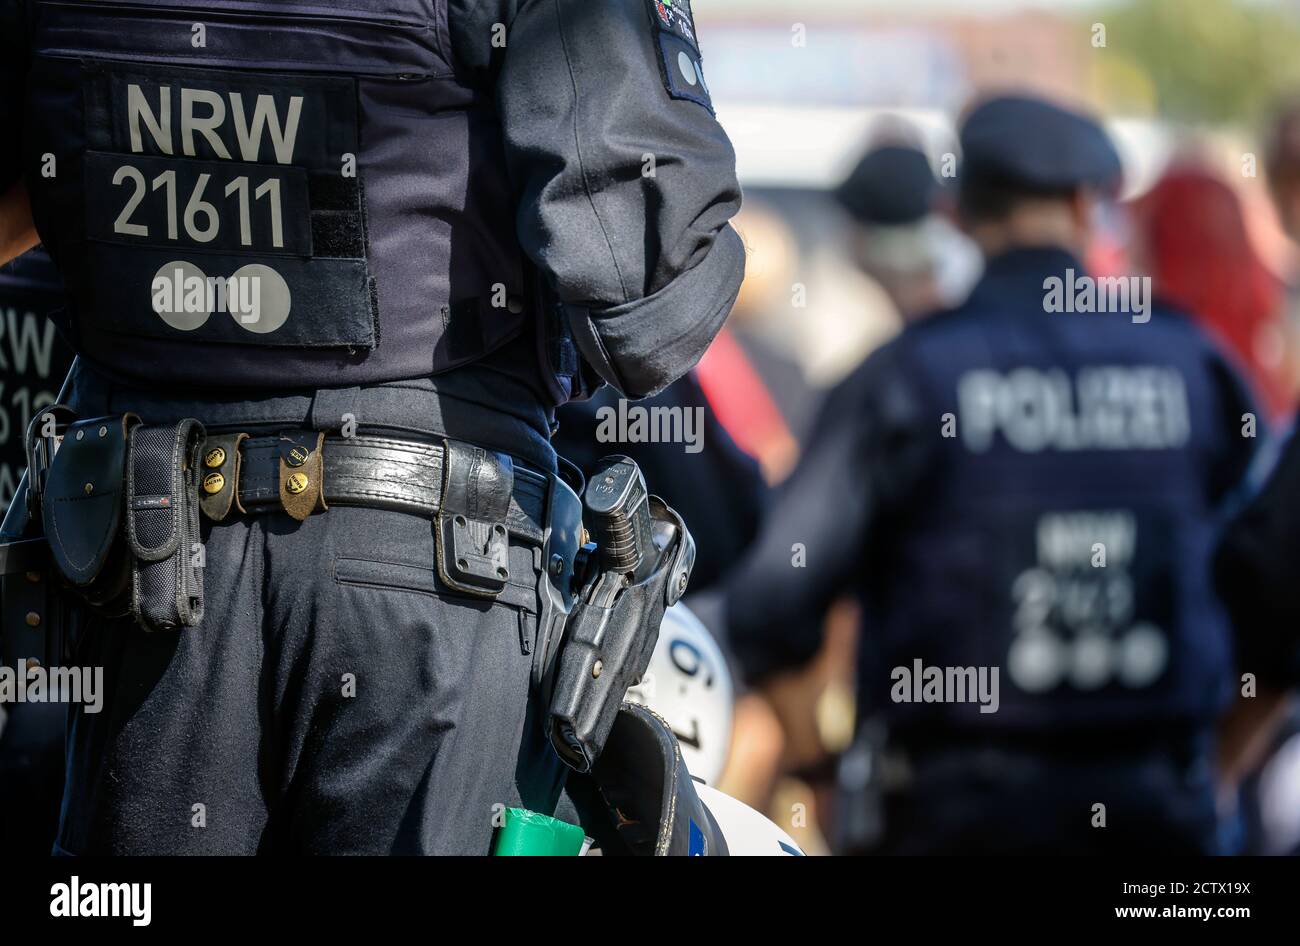 20.09.2020, Düsseldorf, Nordrhein-Westfalen, Deutschland - NRW Polizei im Einsatz bei Anti-Corona Demonstration, Demonstration gegen die Gesundheitspolitik der Stockfoto